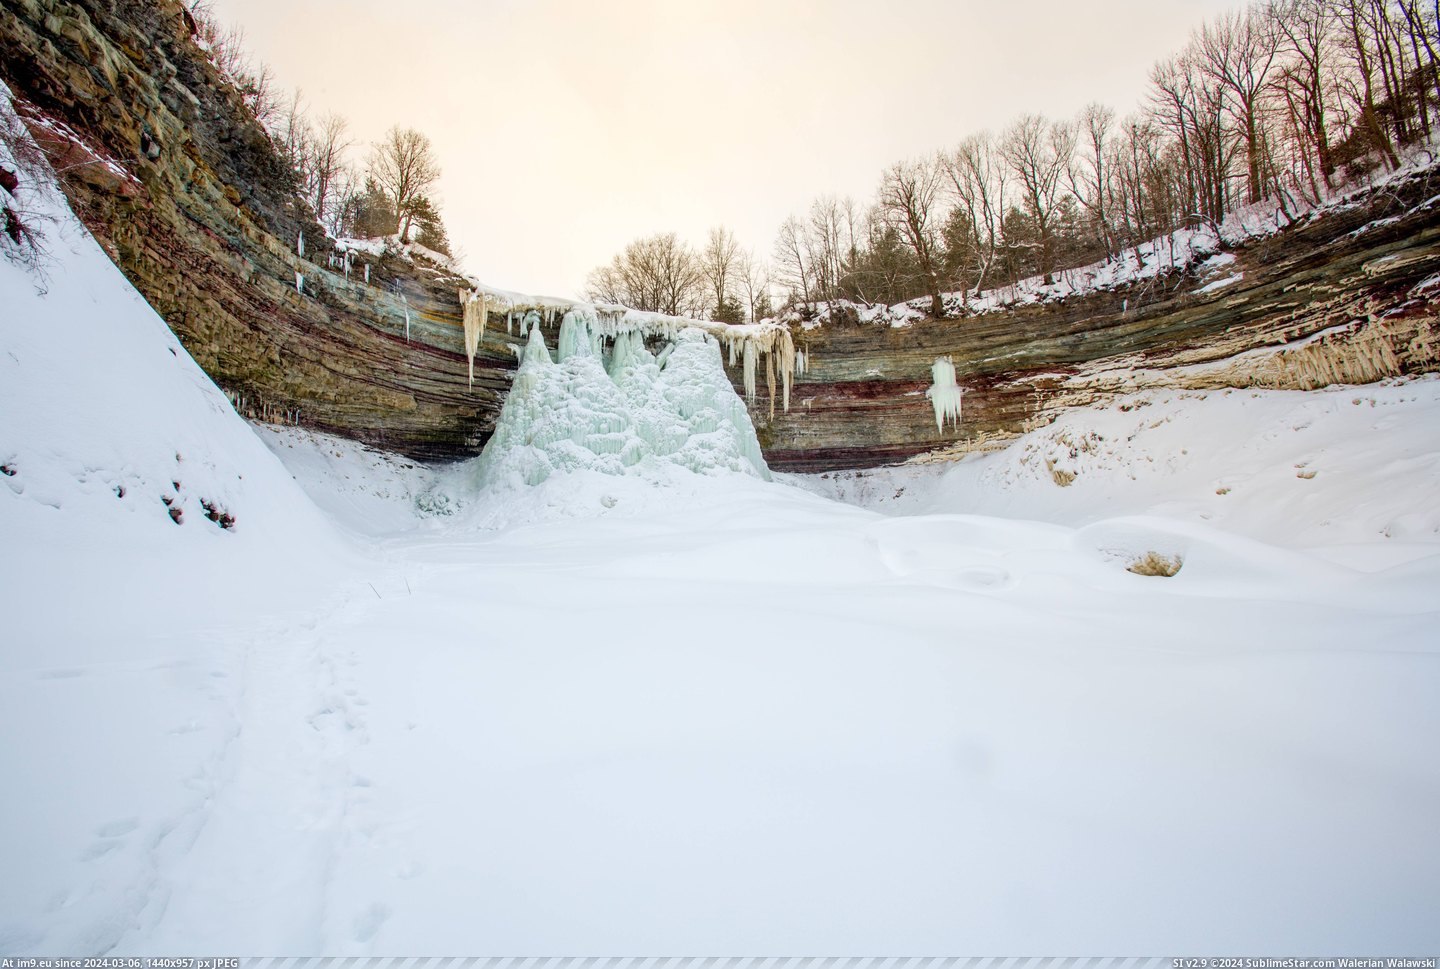 #Falls #Ontario #Southern #Frozen #Balls [Earthporn] Frozen Balls Falls, Southern Ontario  [5459x3639] Pic. (Изображение из альбом My r/EARTHPORN favs))